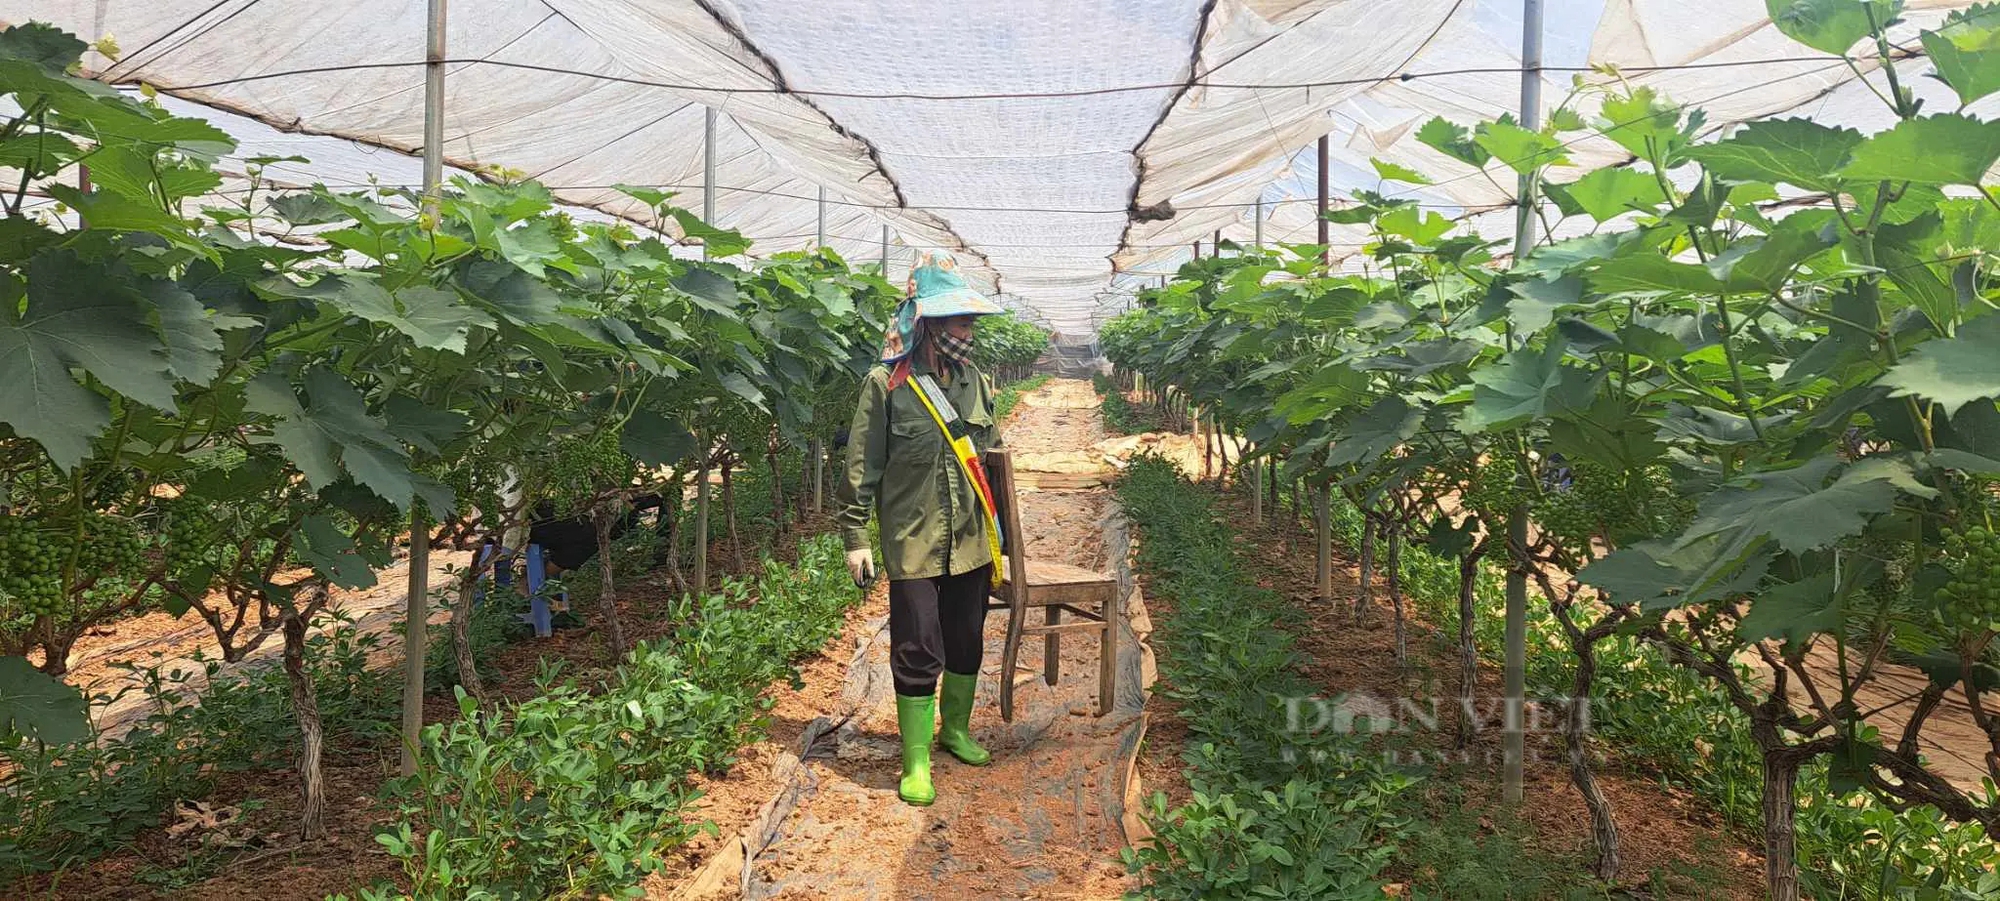 Trồng nho ở Sơn La kiểu gì mà vô vườn nhìn đâu cũng thấy trái, hái 150ha, nông dân "bỏ túi" bộn tiền- Ảnh 5.